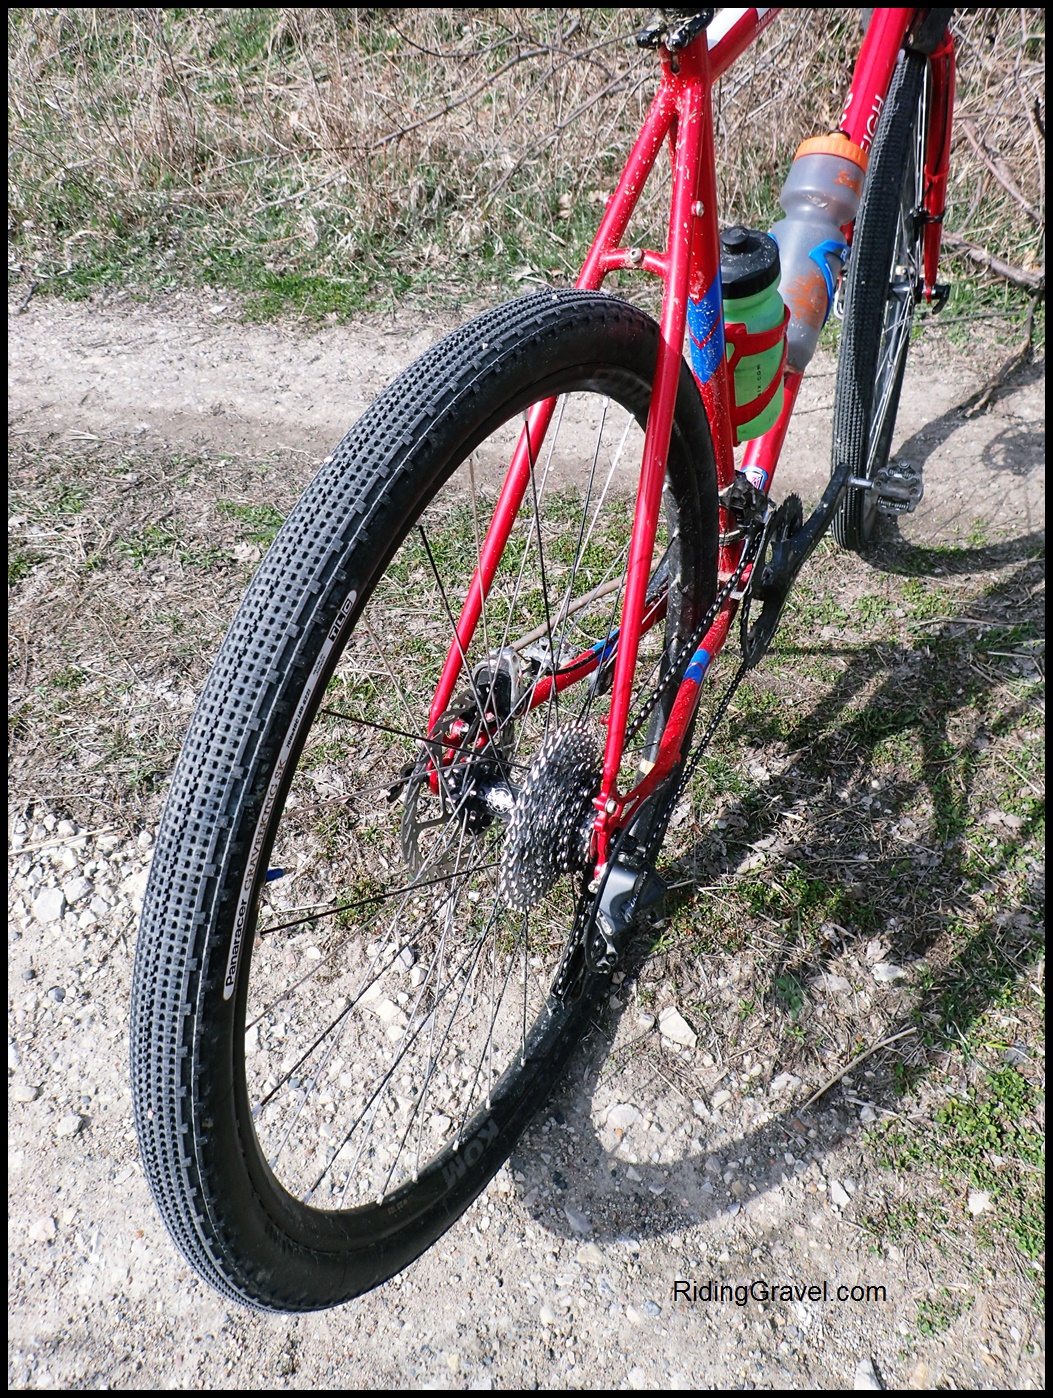 45mm gravel tires